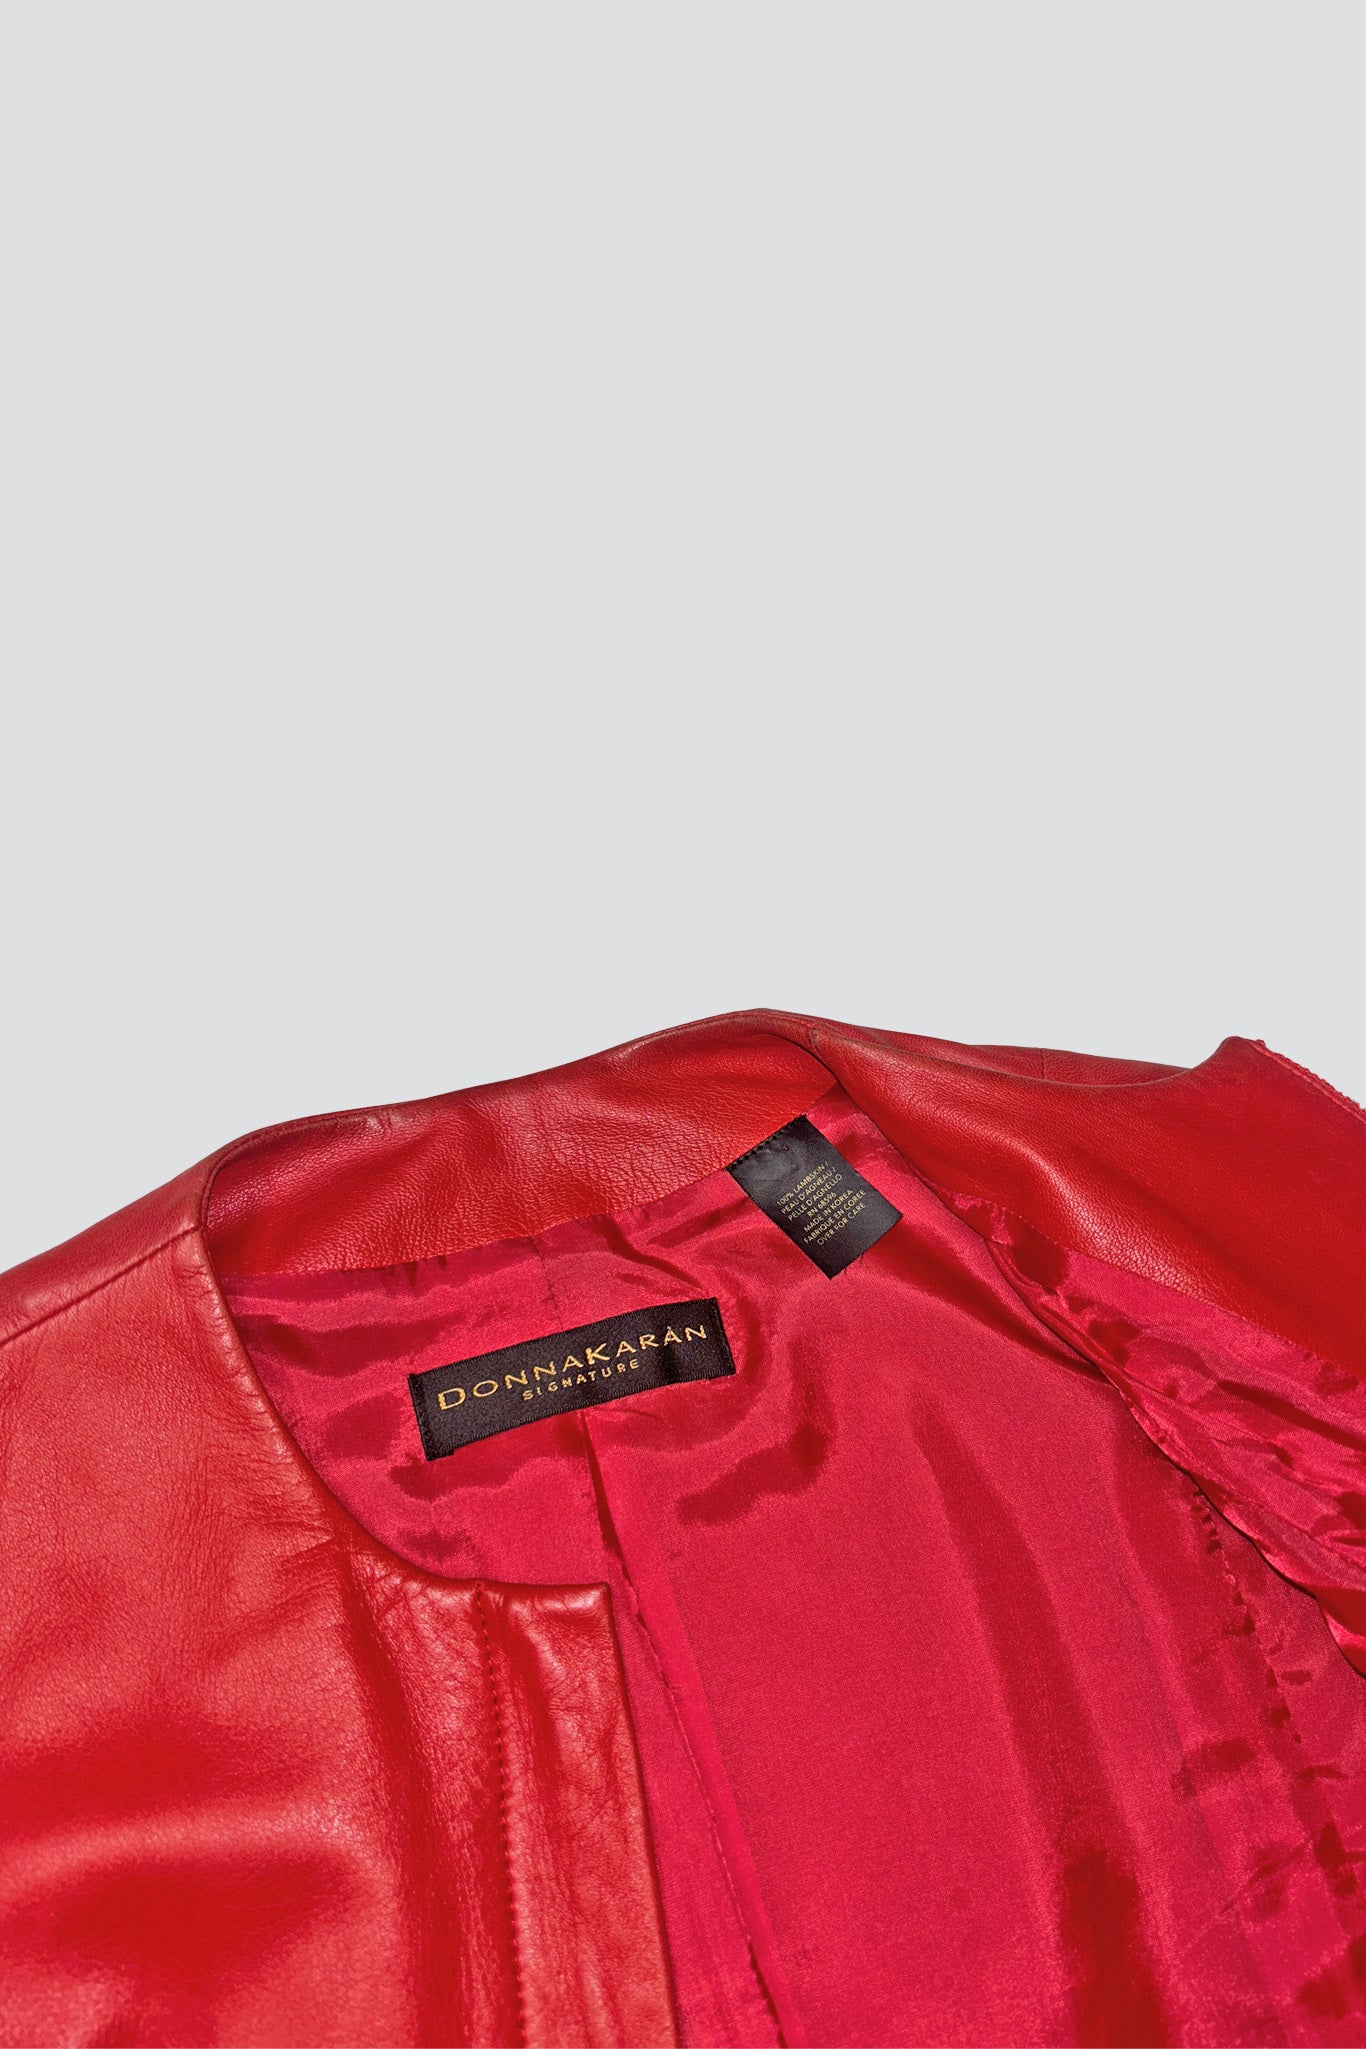 Donna Karan Hot Red Leather Short Jacket